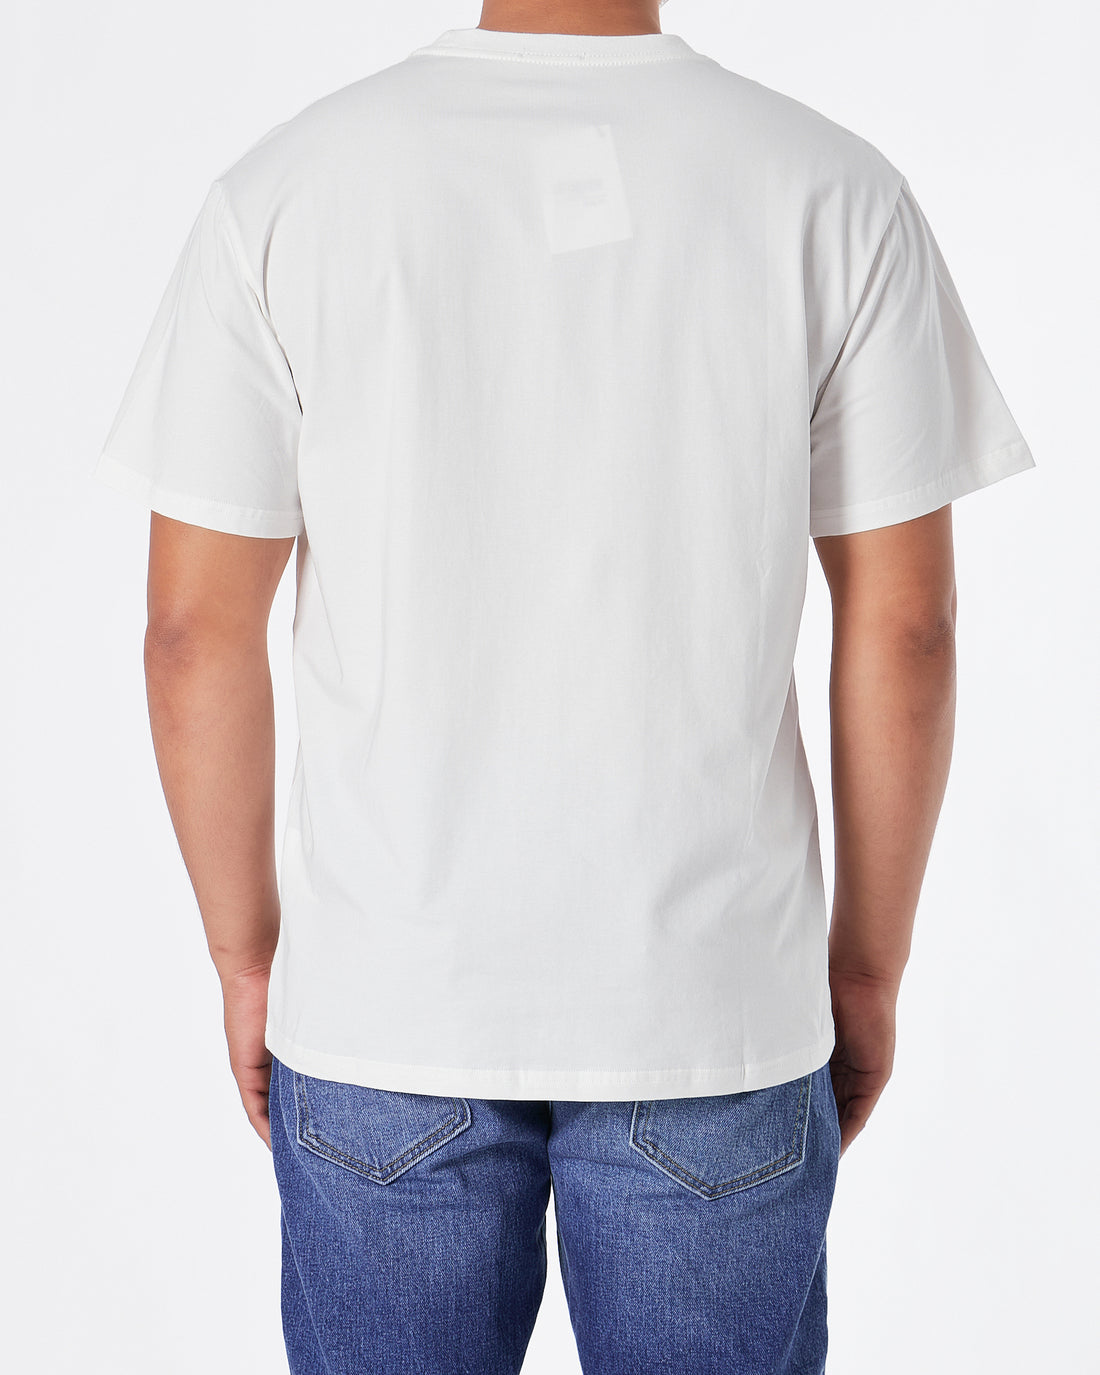 LOW Logo Printed Men White T-Shirt 20.90